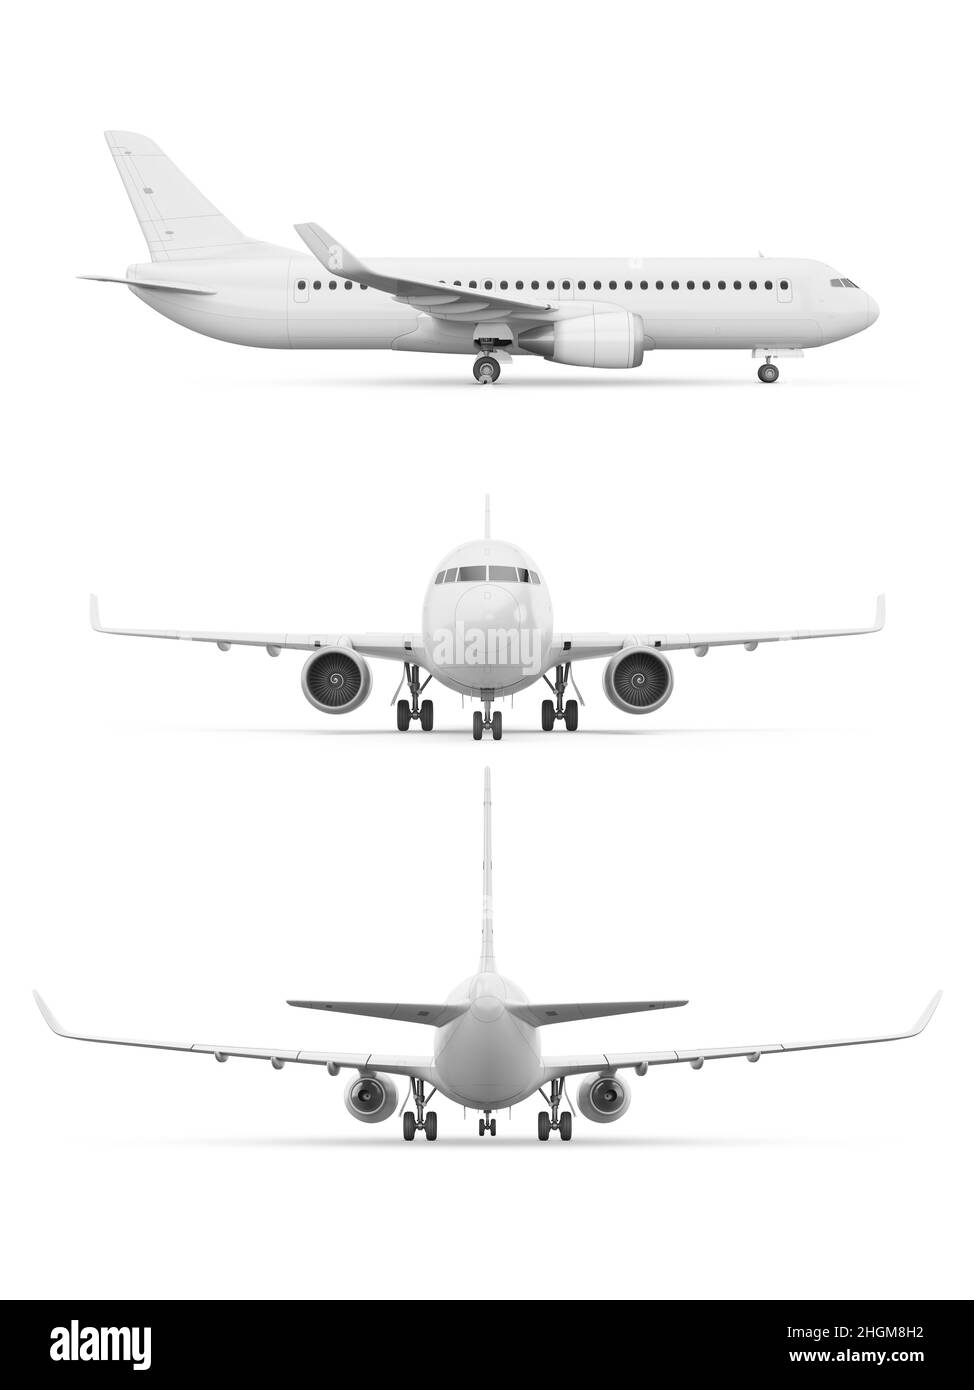 Aeroplane, illustration Stock Photo